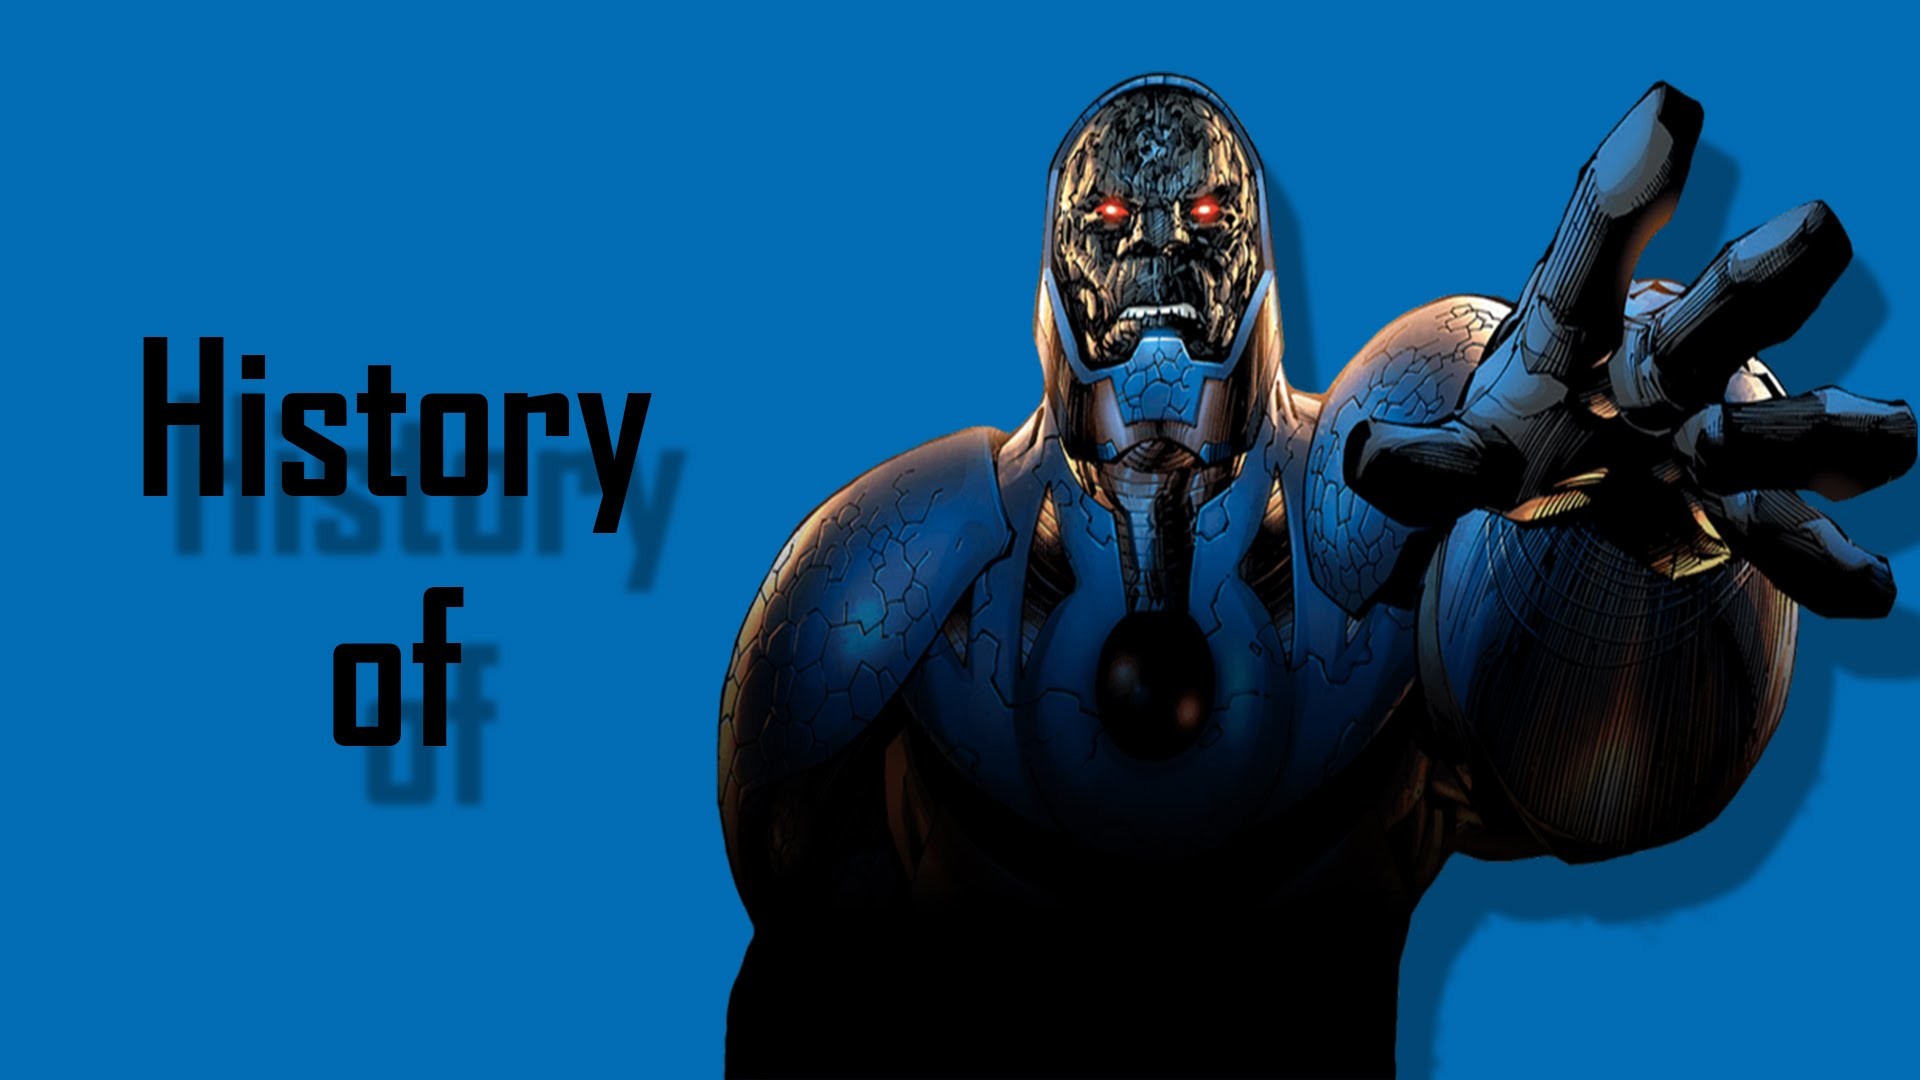 History of Darkseid